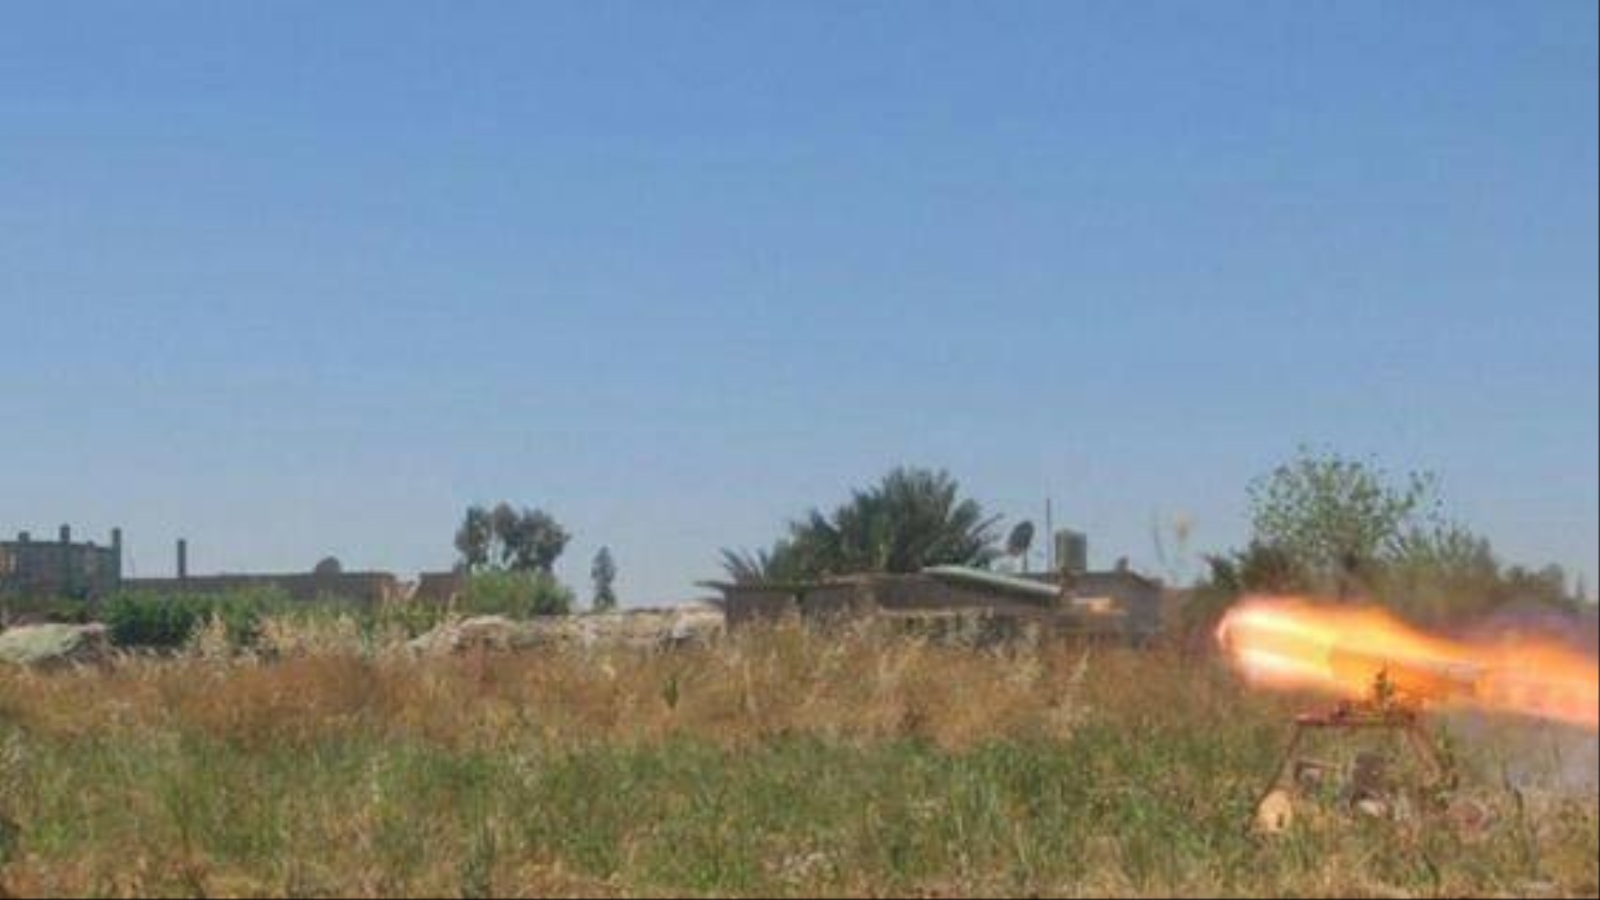 ‪تنظيم الدولة نشر صورا تظهر جانبا من المعارك في دير الزور‬ تنظيم الدولة نشر صورا تظهر جانبا من المعارك في دير الزور